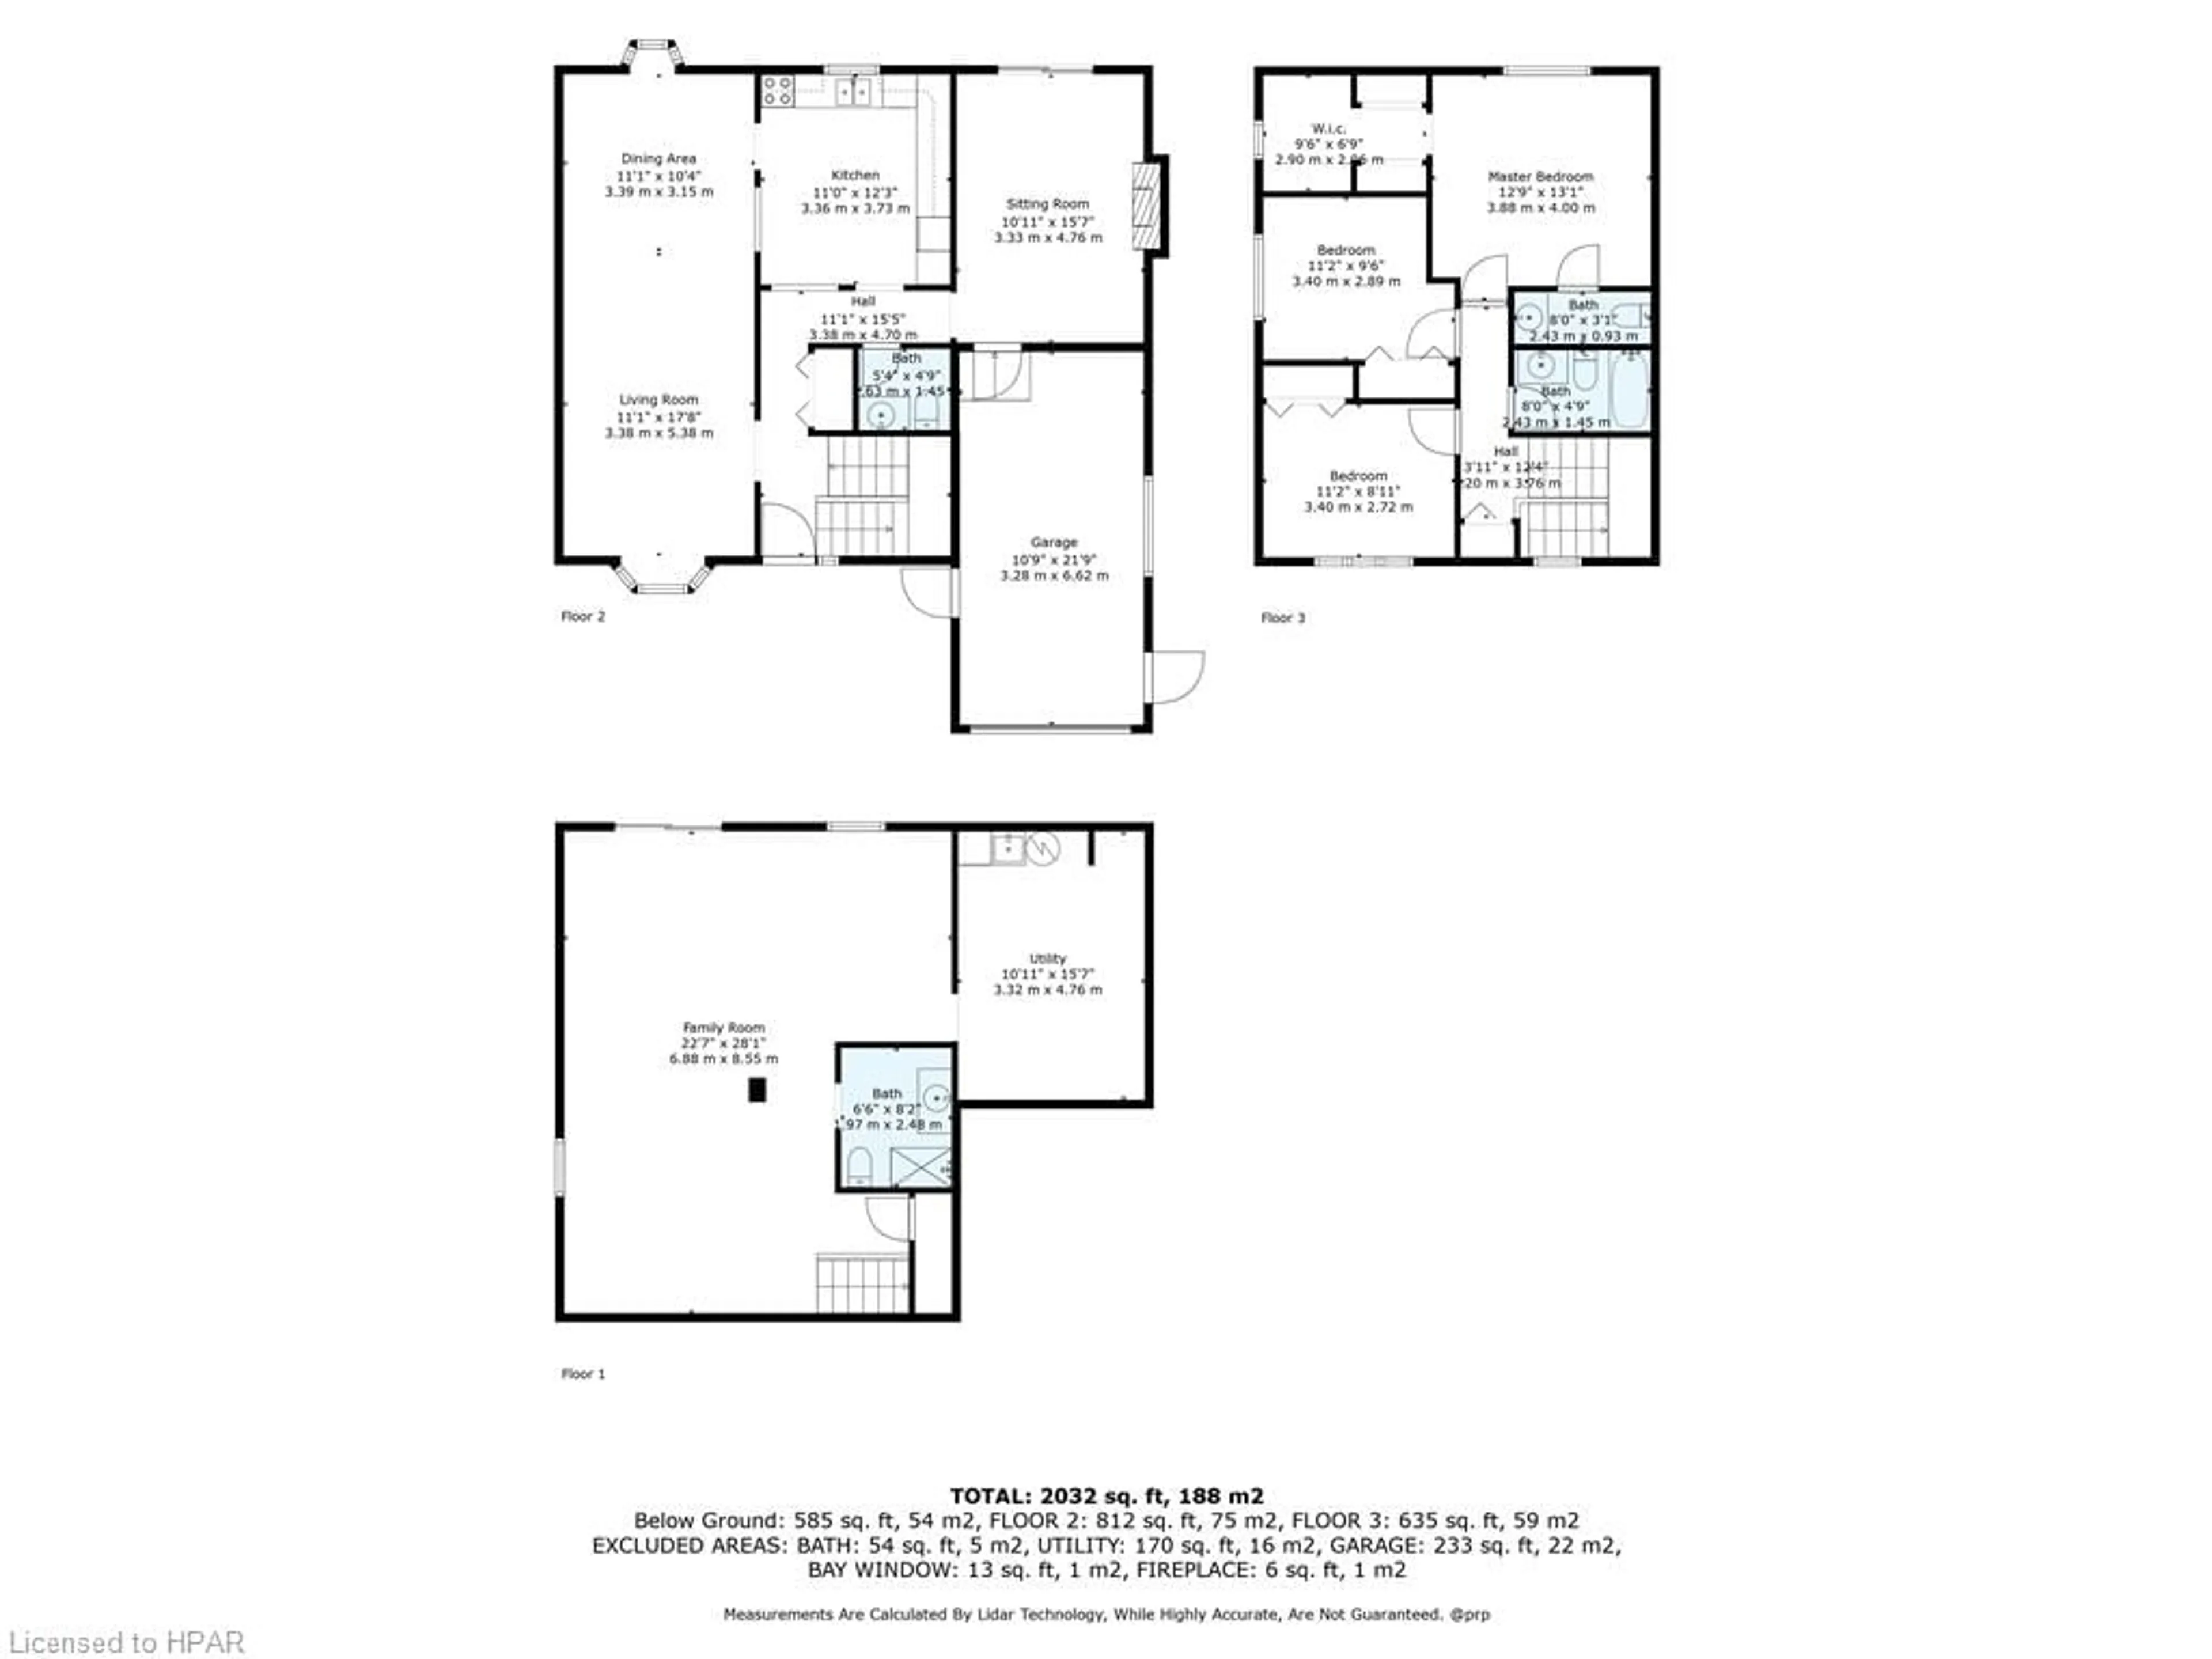 Floor plan for 106 Meighen Mews, Stratford Ontario N4Z 1B5